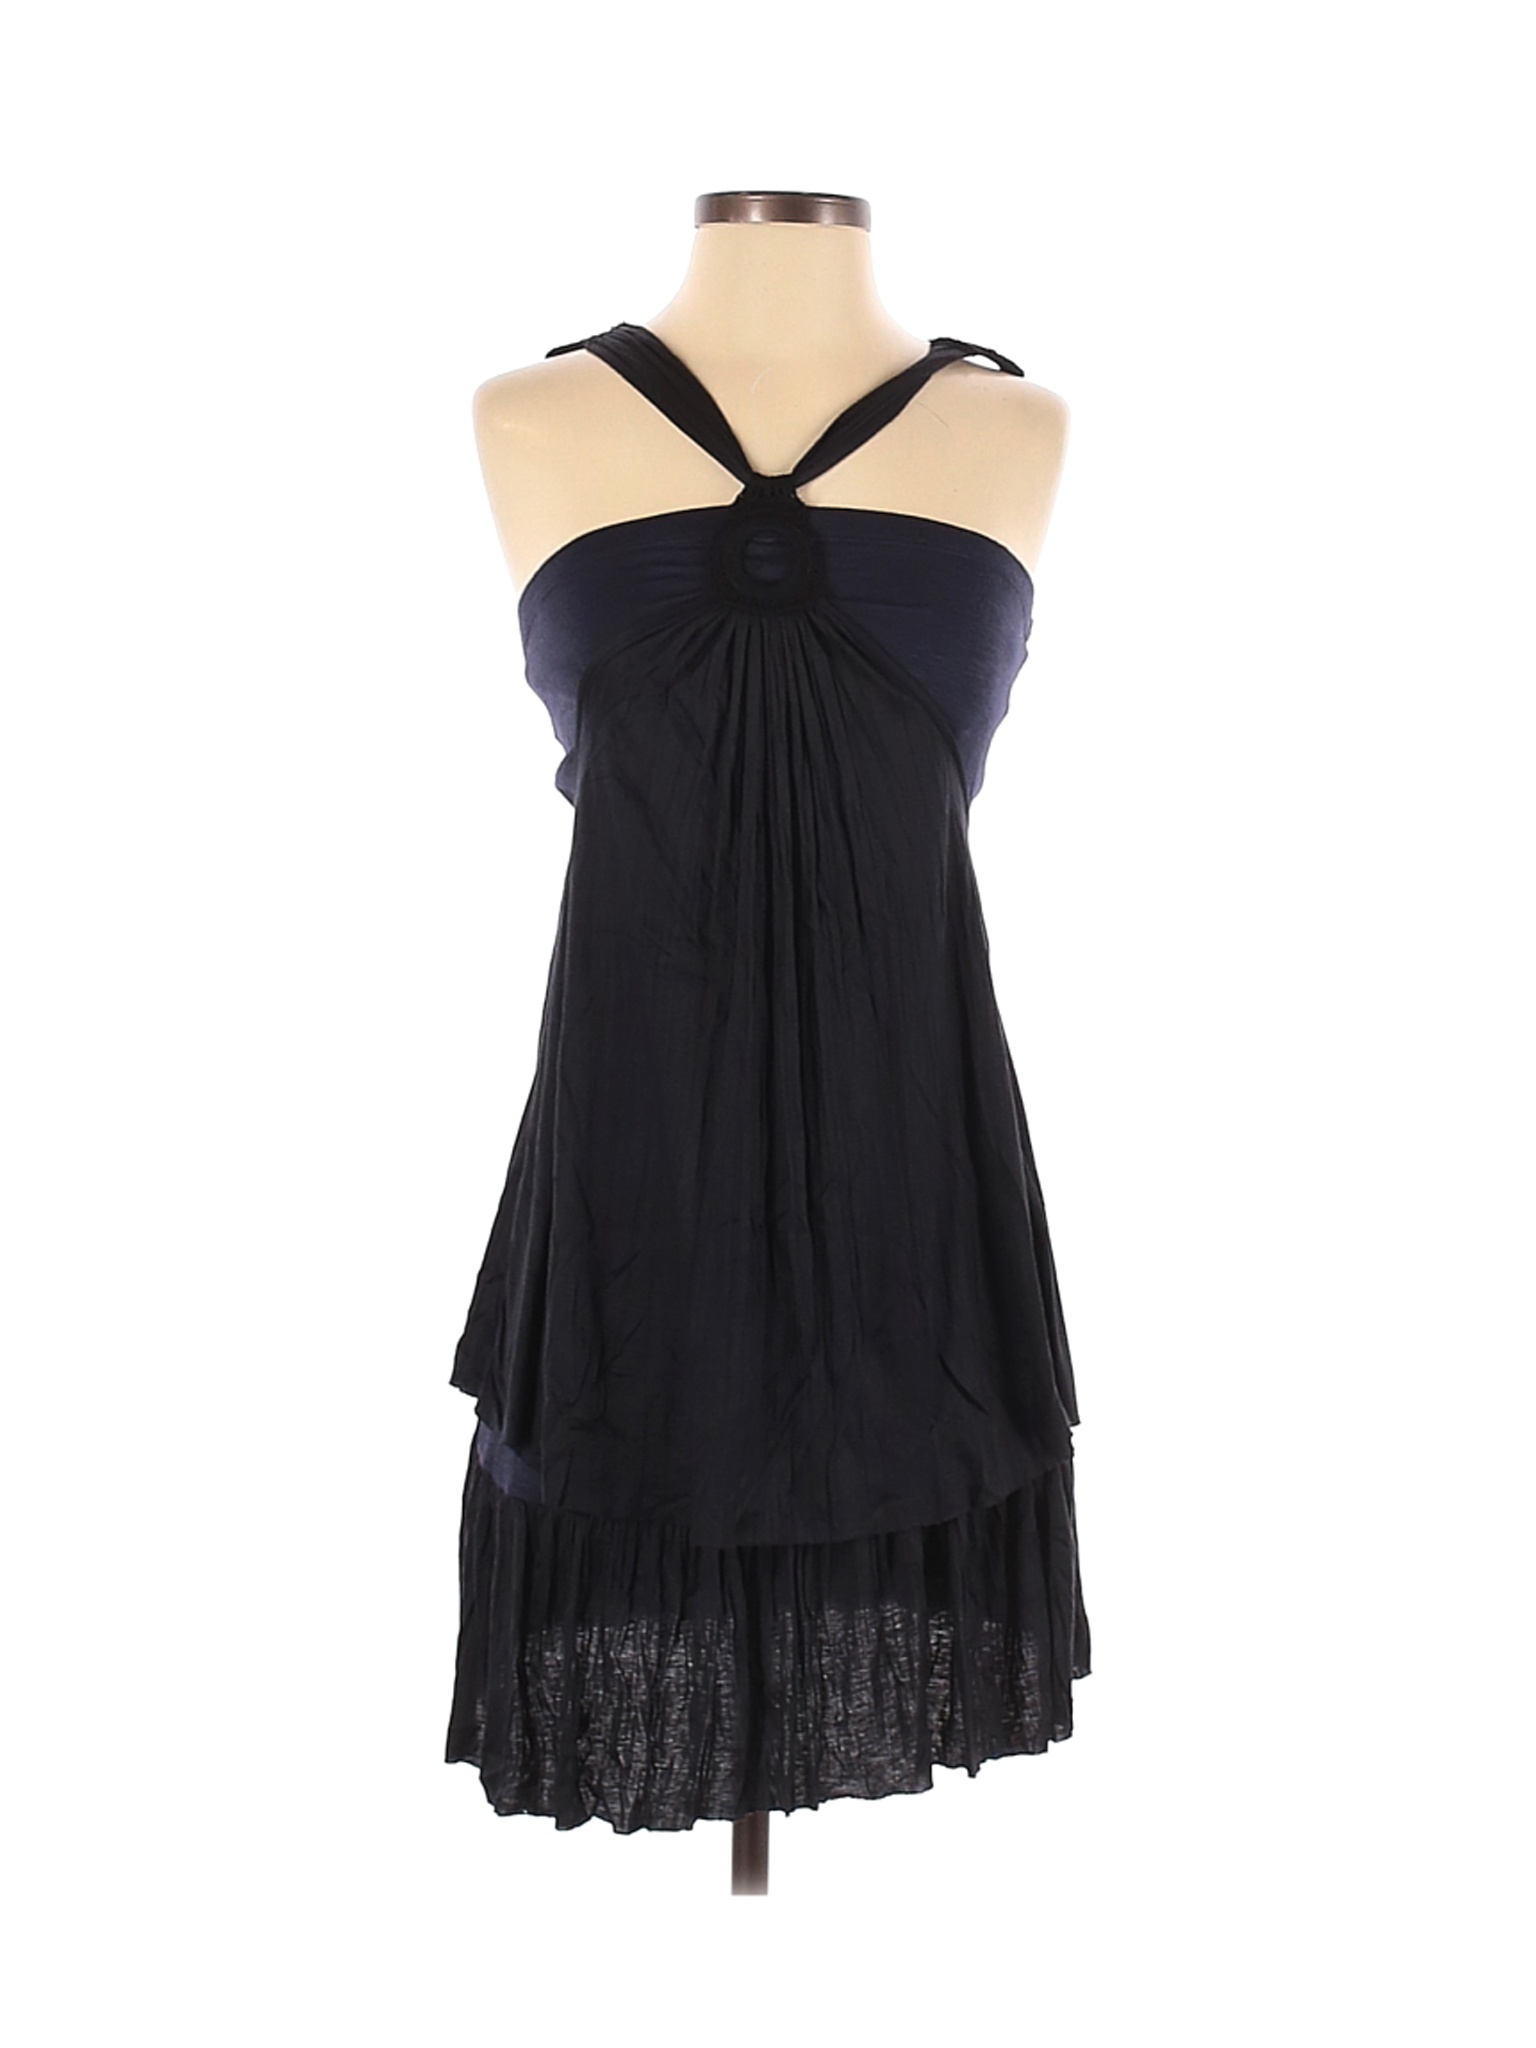 Free People Women Black Casual Dress S | eBay